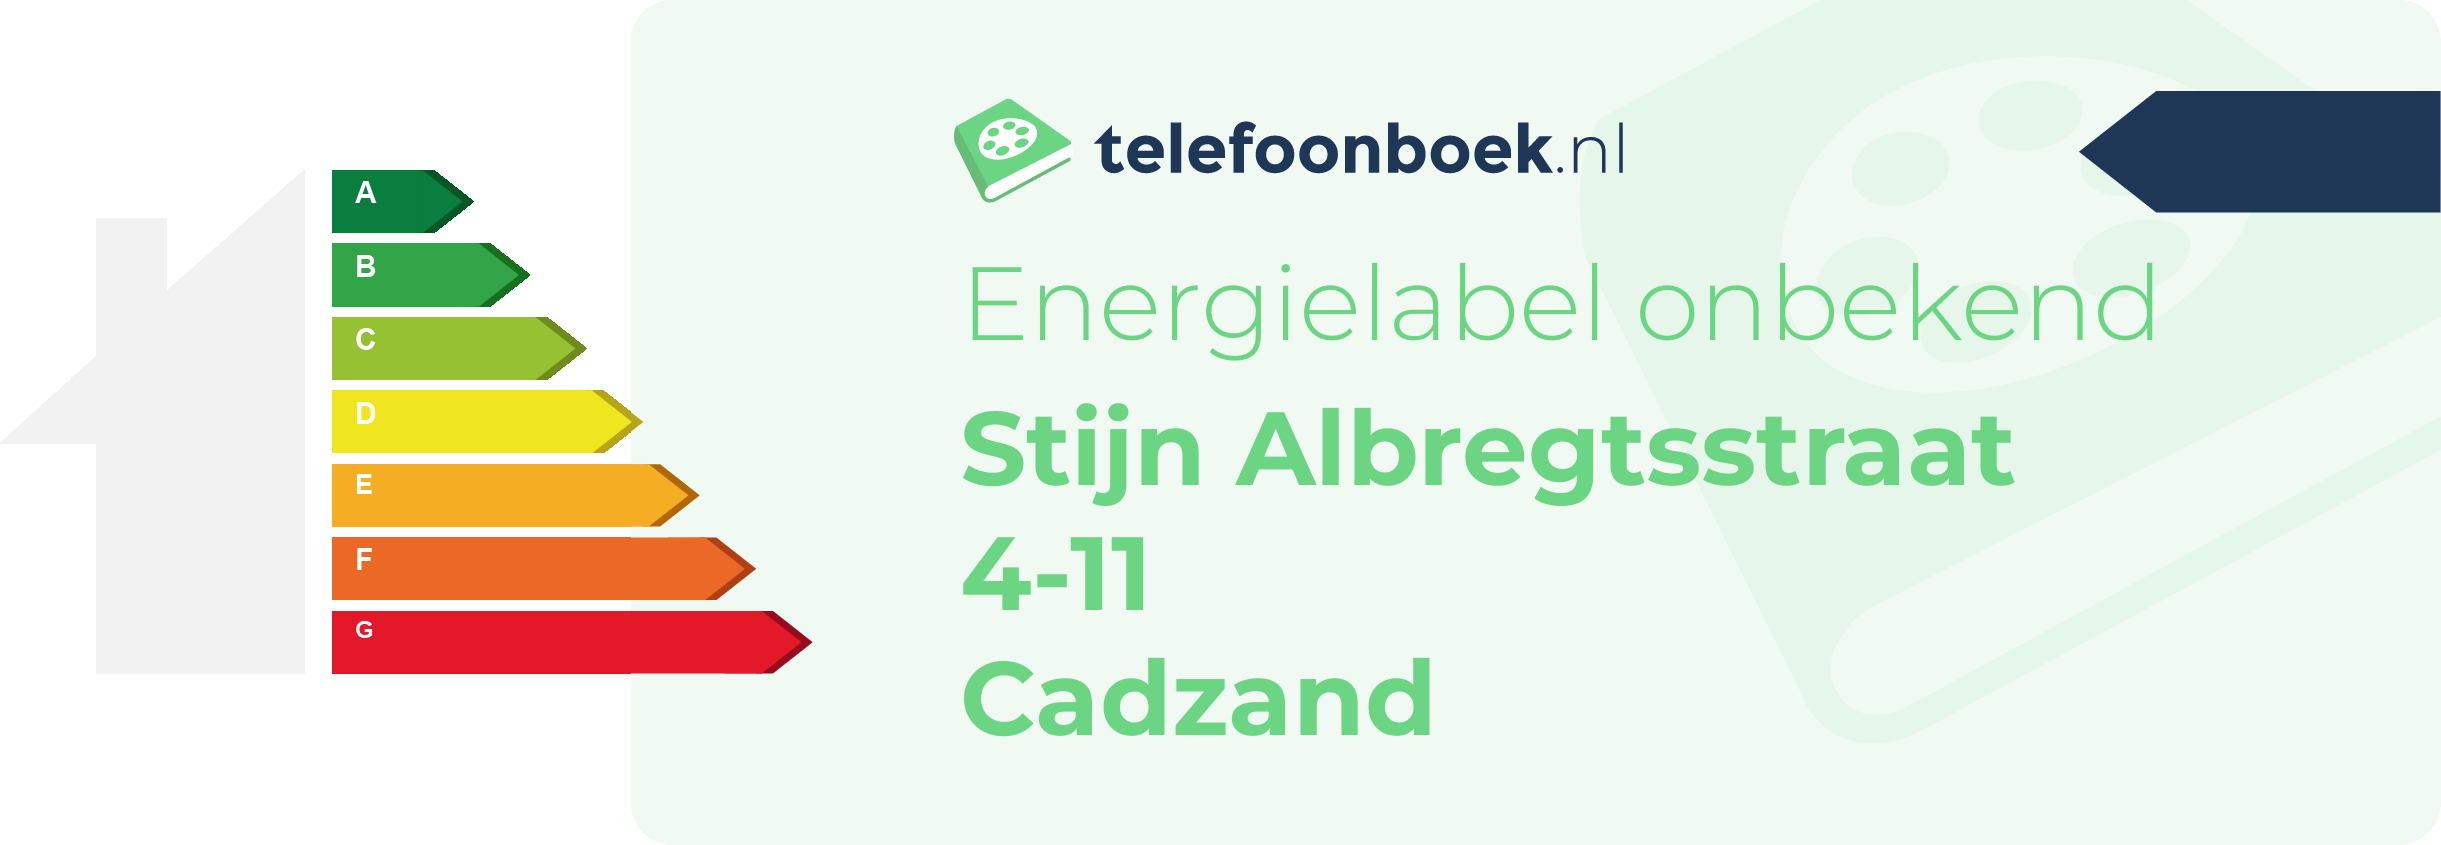 Energielabel Stijn Albregtsstraat 4-11 Cadzand